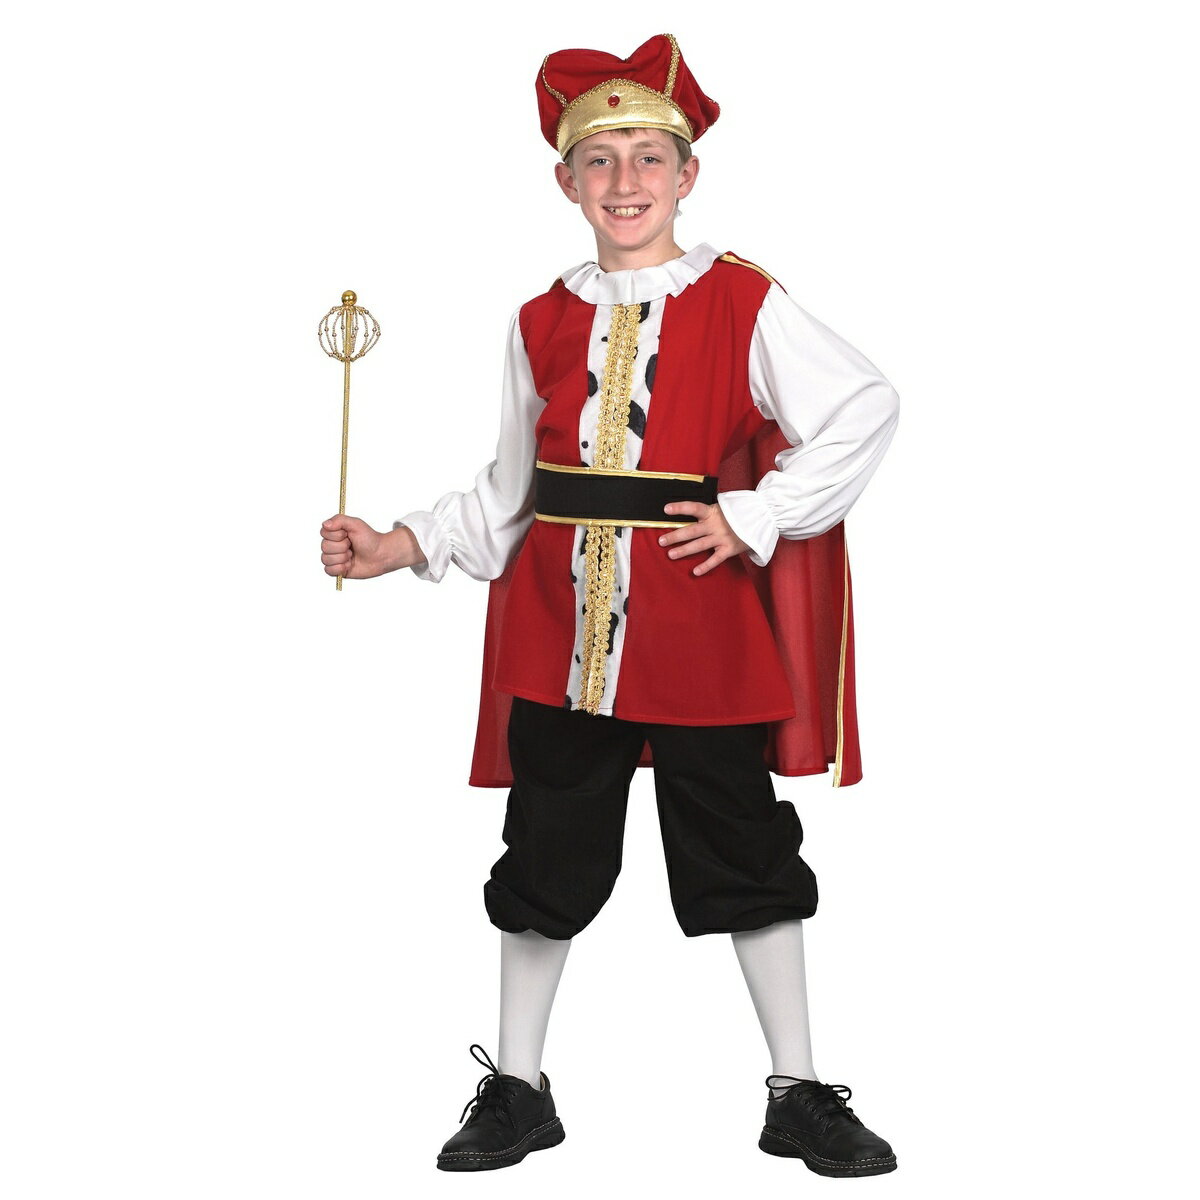 (ブリストル・ノベルティー) Bristol Novelty ハロウィン コスプレ・仮装用 キッズ・子供用 中世の王様 コスチューム 小物セット 男の子 